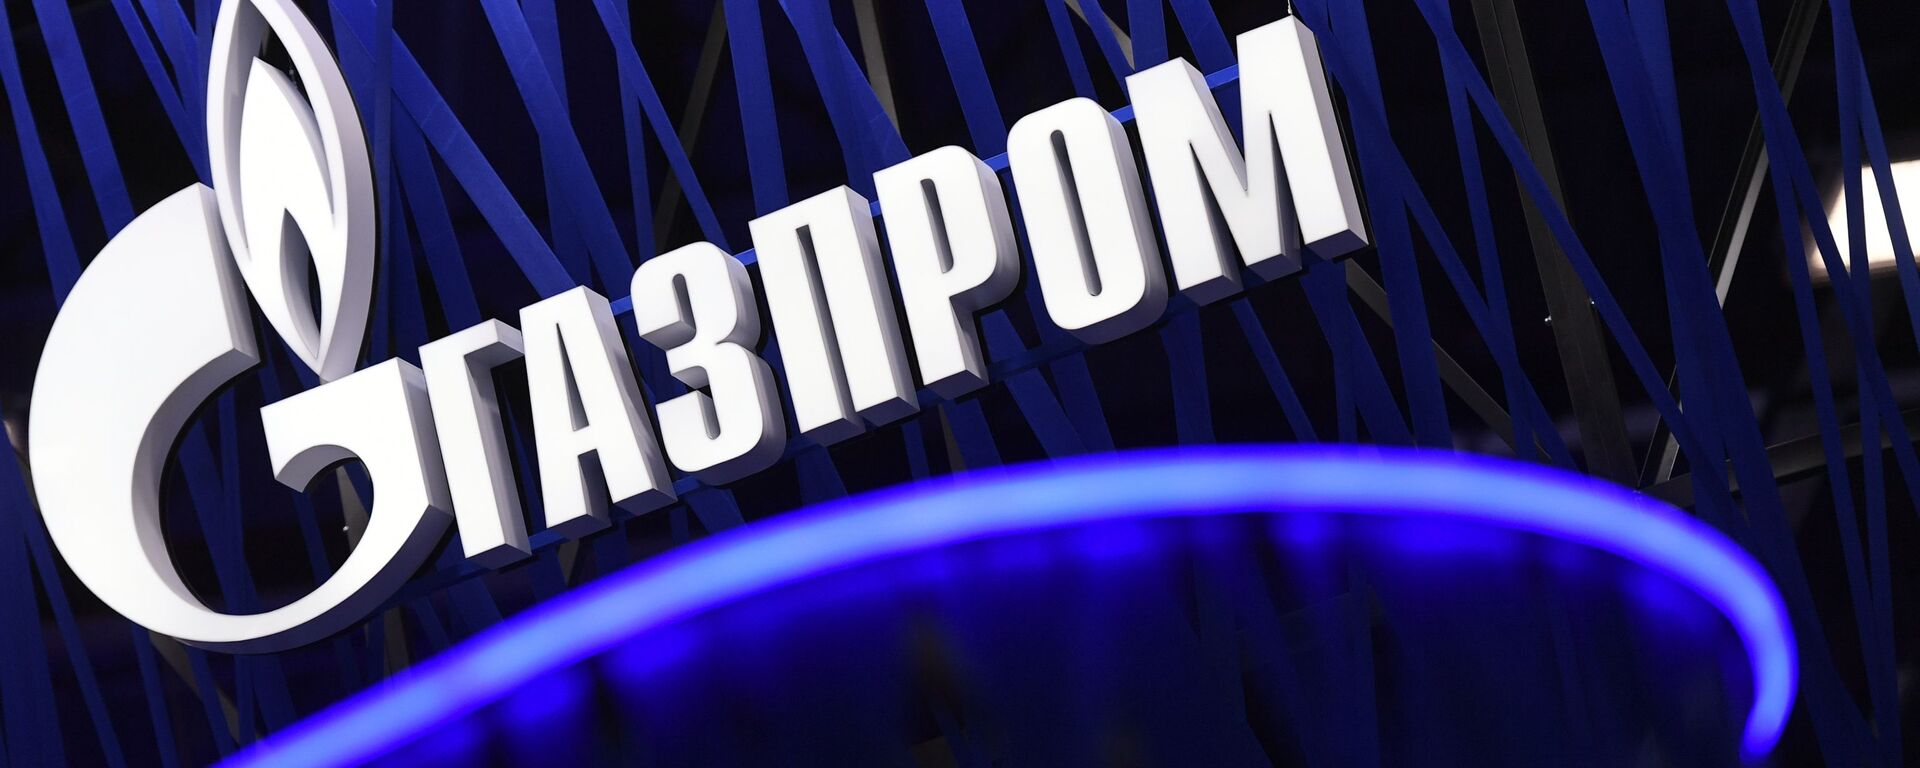 Стенд компании Газпром на Петербургском международном экономическом форуме 2019, архивное фото - Sputnik Литва, 1920, 16.07.2021